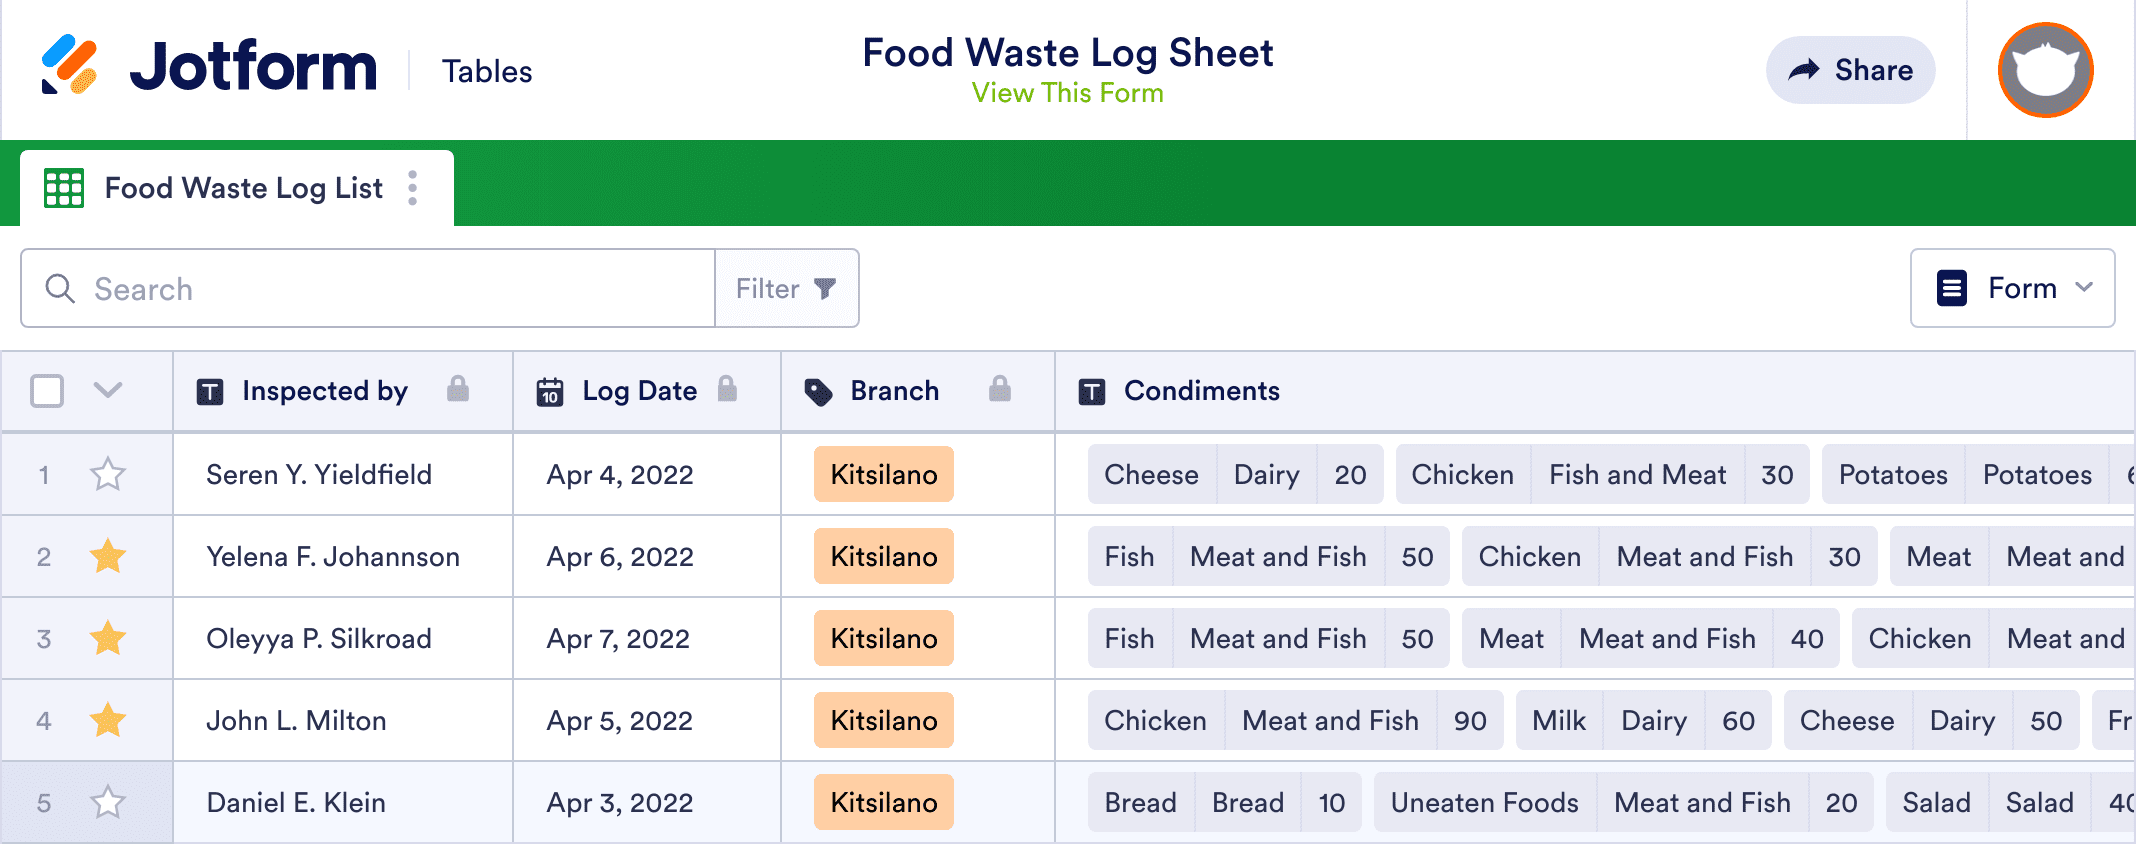 Food Waste Log Sheet